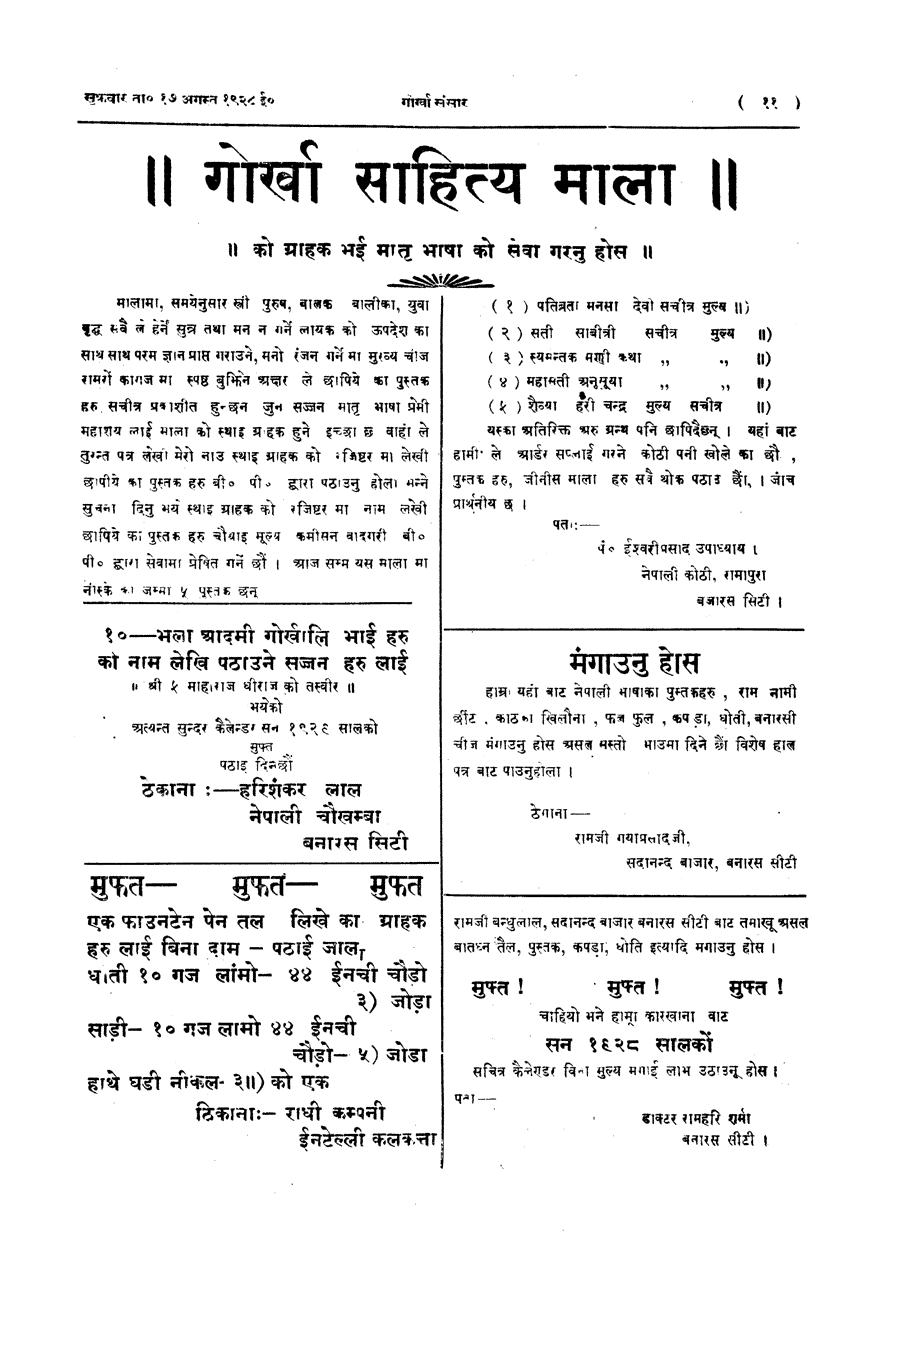 Gorkha Sansar, 17 Aug 1928, page 11